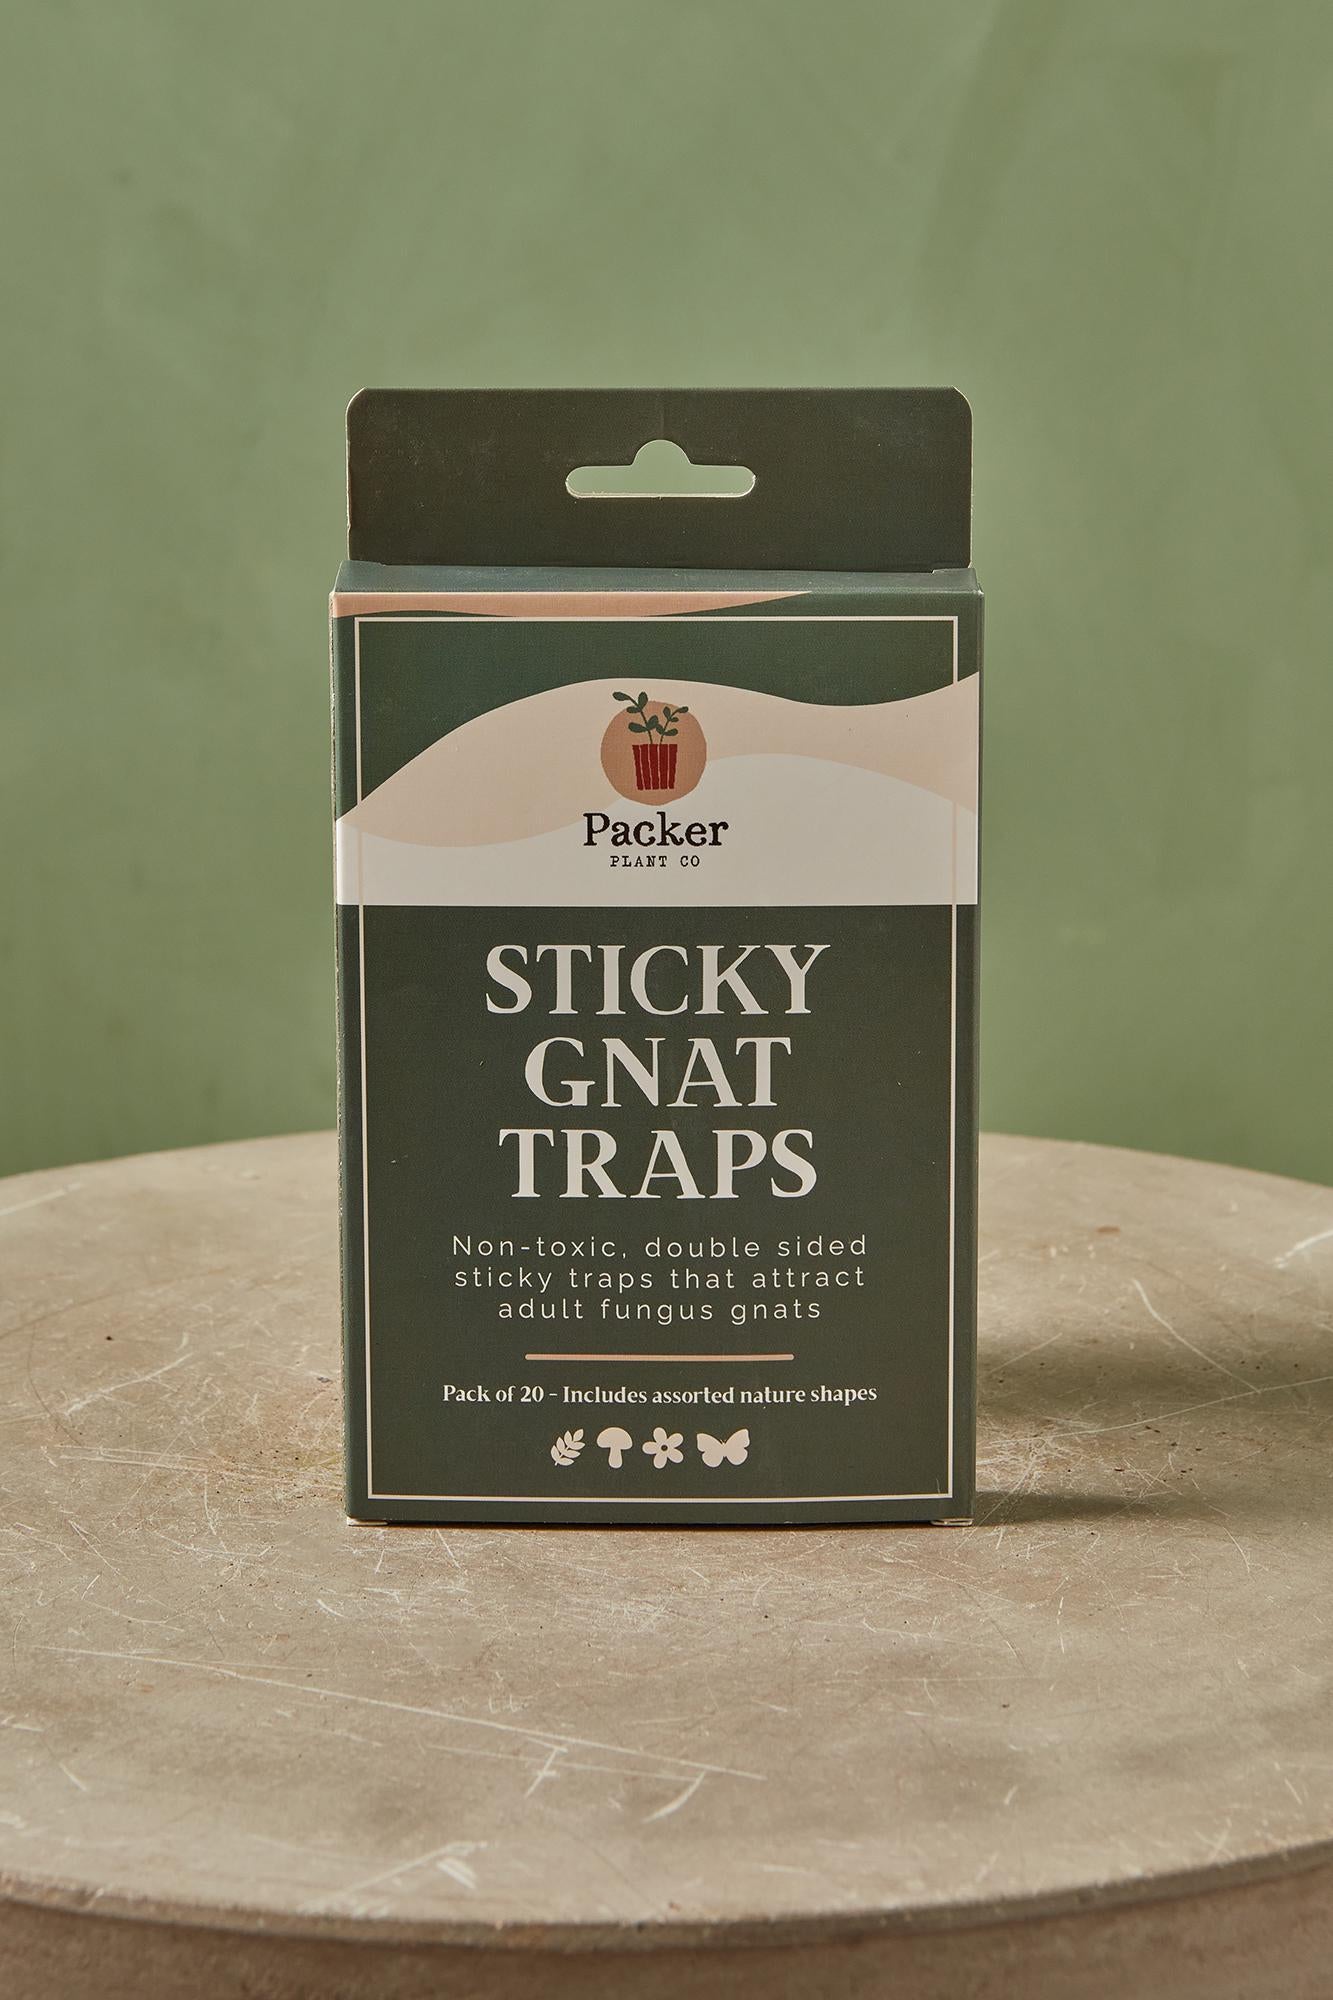 Sticky Gnat Traps